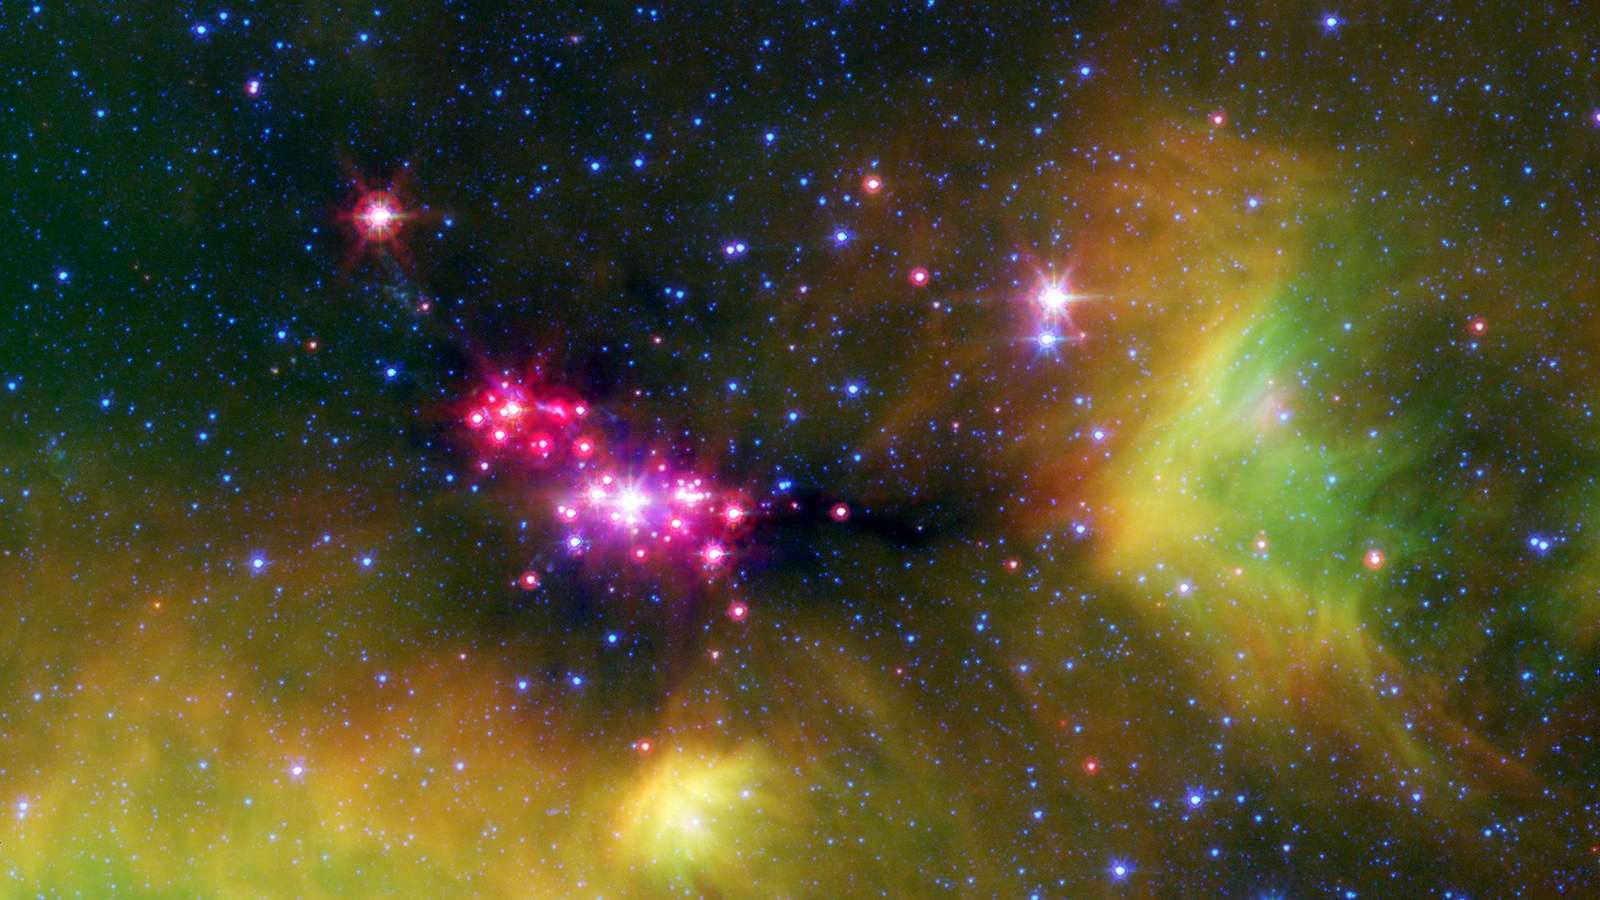 Estrelas em sua infância brilham gloriosamente nesta imagem, feita em infravermelho, da região de formação estelar de Serpens, registrada pelo Telescópio Espacial Spitzer, da Nasa. Os pontos rosa-avermelhados são estrelas bebês profundamente incrustadas na nuvem cósmica de gás e poeira que entrou em colapso. Um disco empoeirado de detritos cósmicos, ou “disco protoplanetário”, que pode eventualmente formar planetas, rodeia as estrelas jovens. Fios verdes indicam a presença de moléculas ricas em carbono, chamadas hidrocarbonetos policíclicos aromáticos. As manchas azuis são estrelas de fundo, na Via Láctea. A região de formação estelar de Serpens está localizada a aproximadamente 848 anos-luz de distância, na Constelação de Serpens